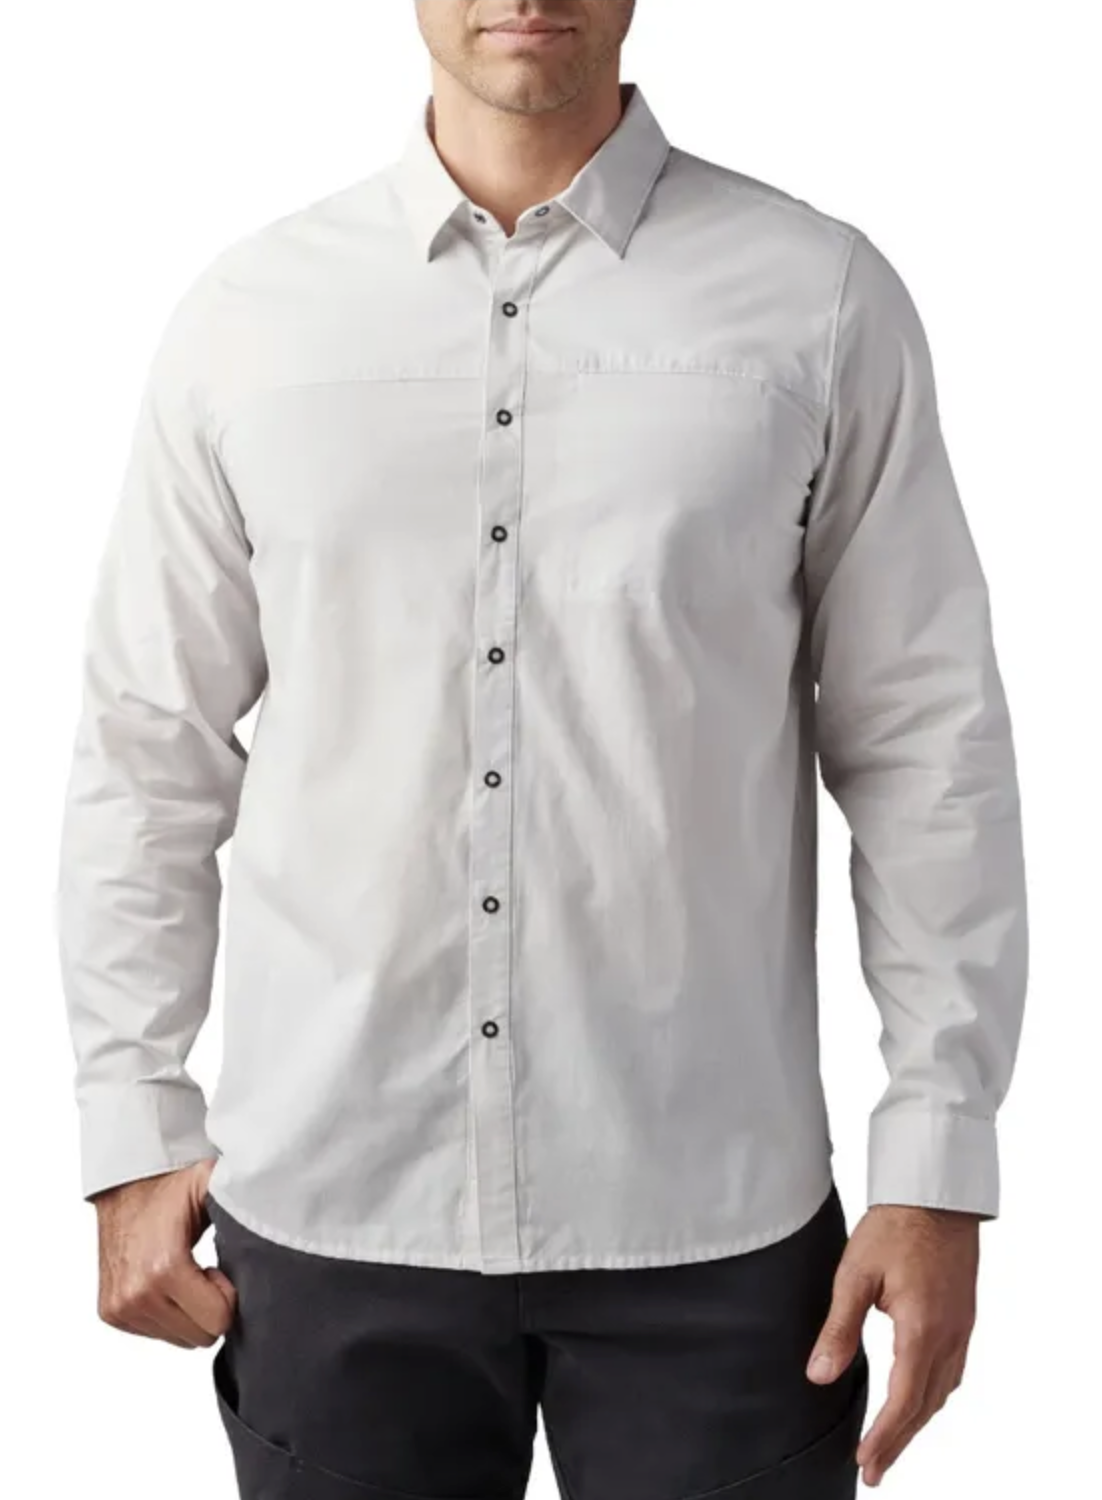 5.11 - Igor Solid Long Sleeve Shirt - Cinder (089)